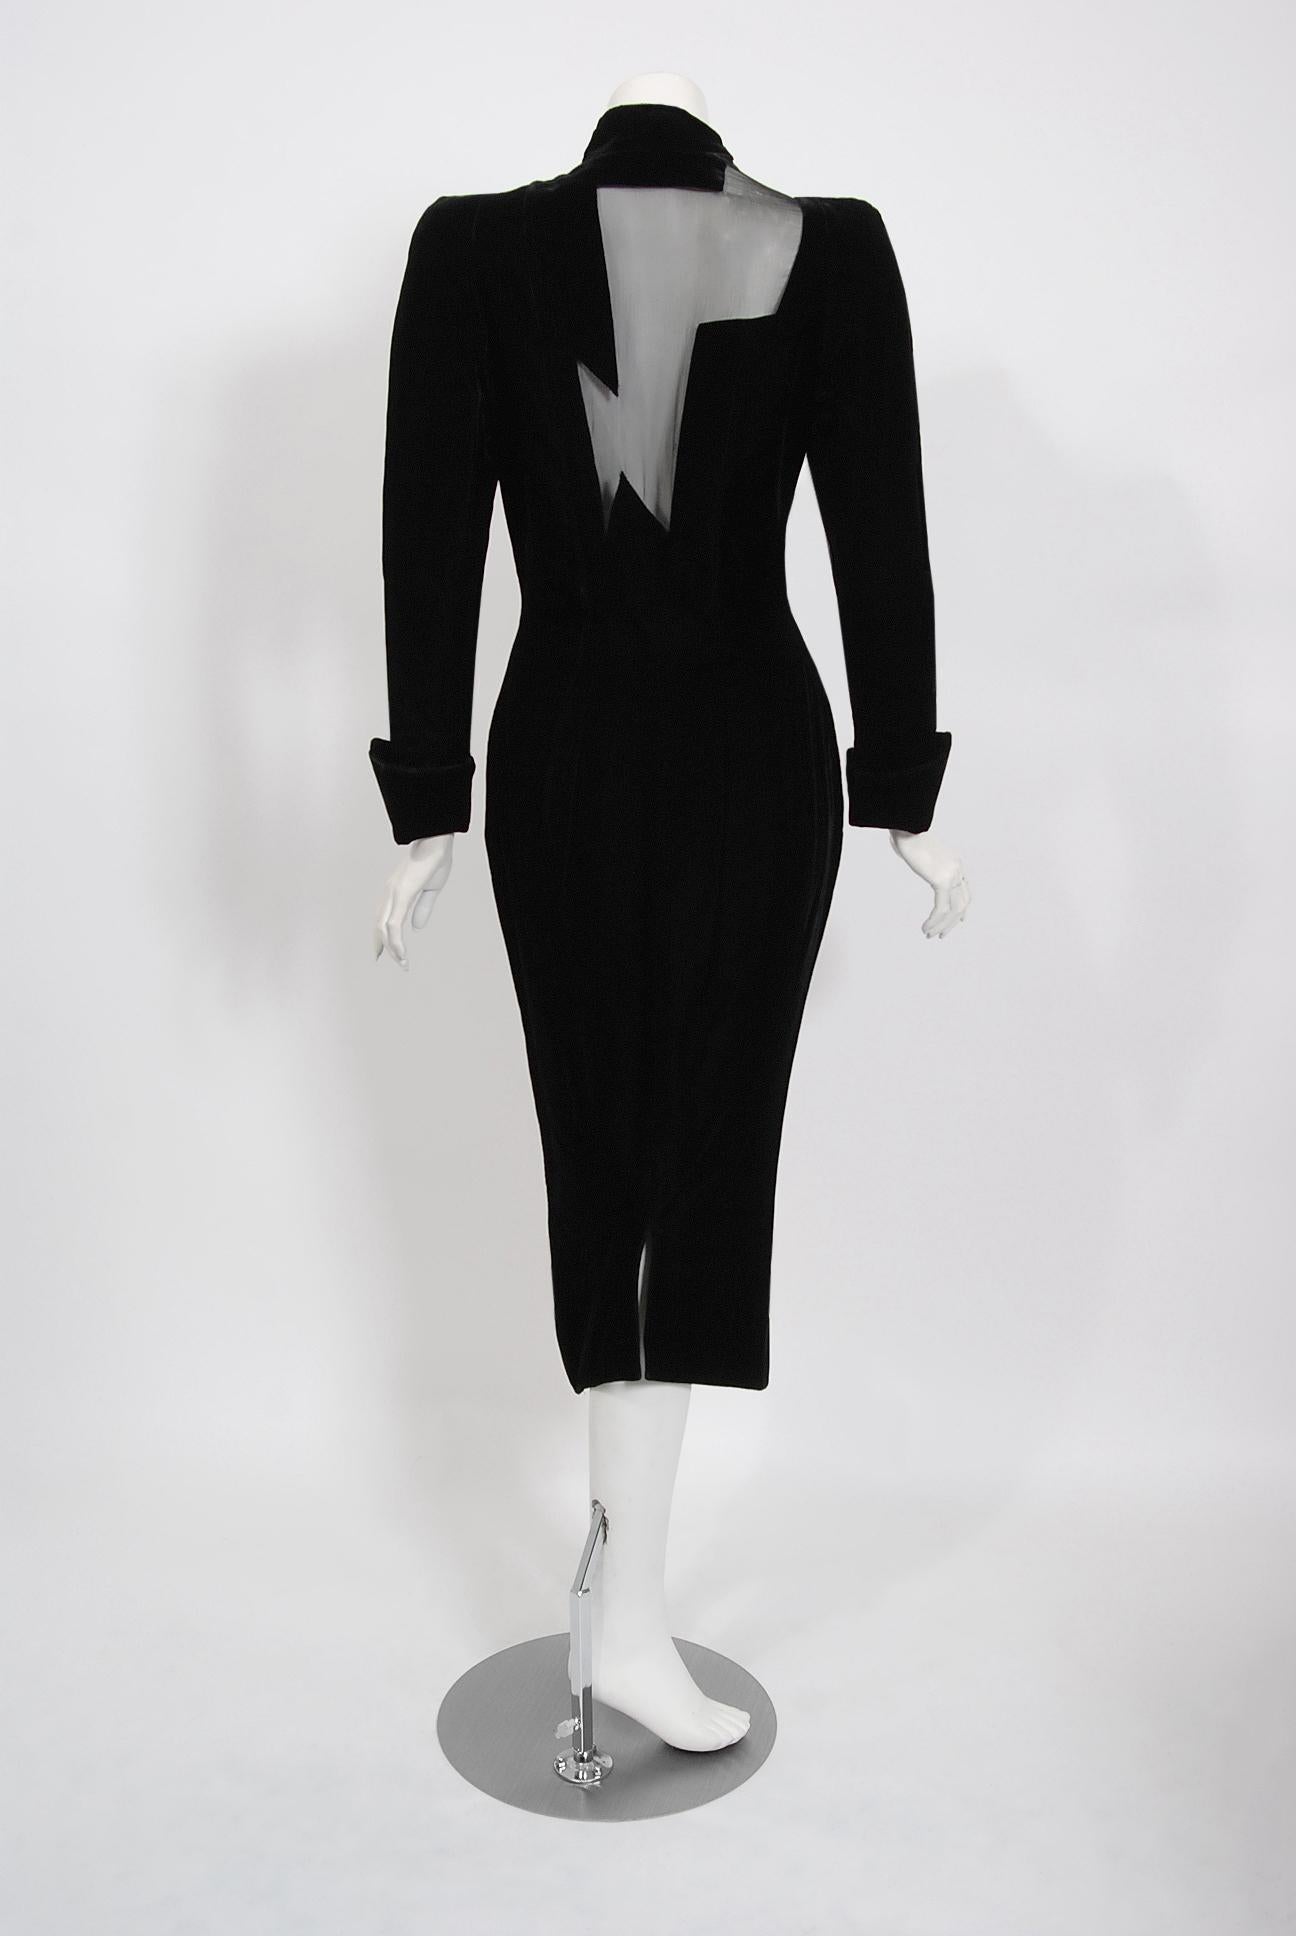 1989 Thierry Mugler Runway Black Velvet Lightning Bolt Sheer Illusion Dress (robe éclair en velours noir) 1